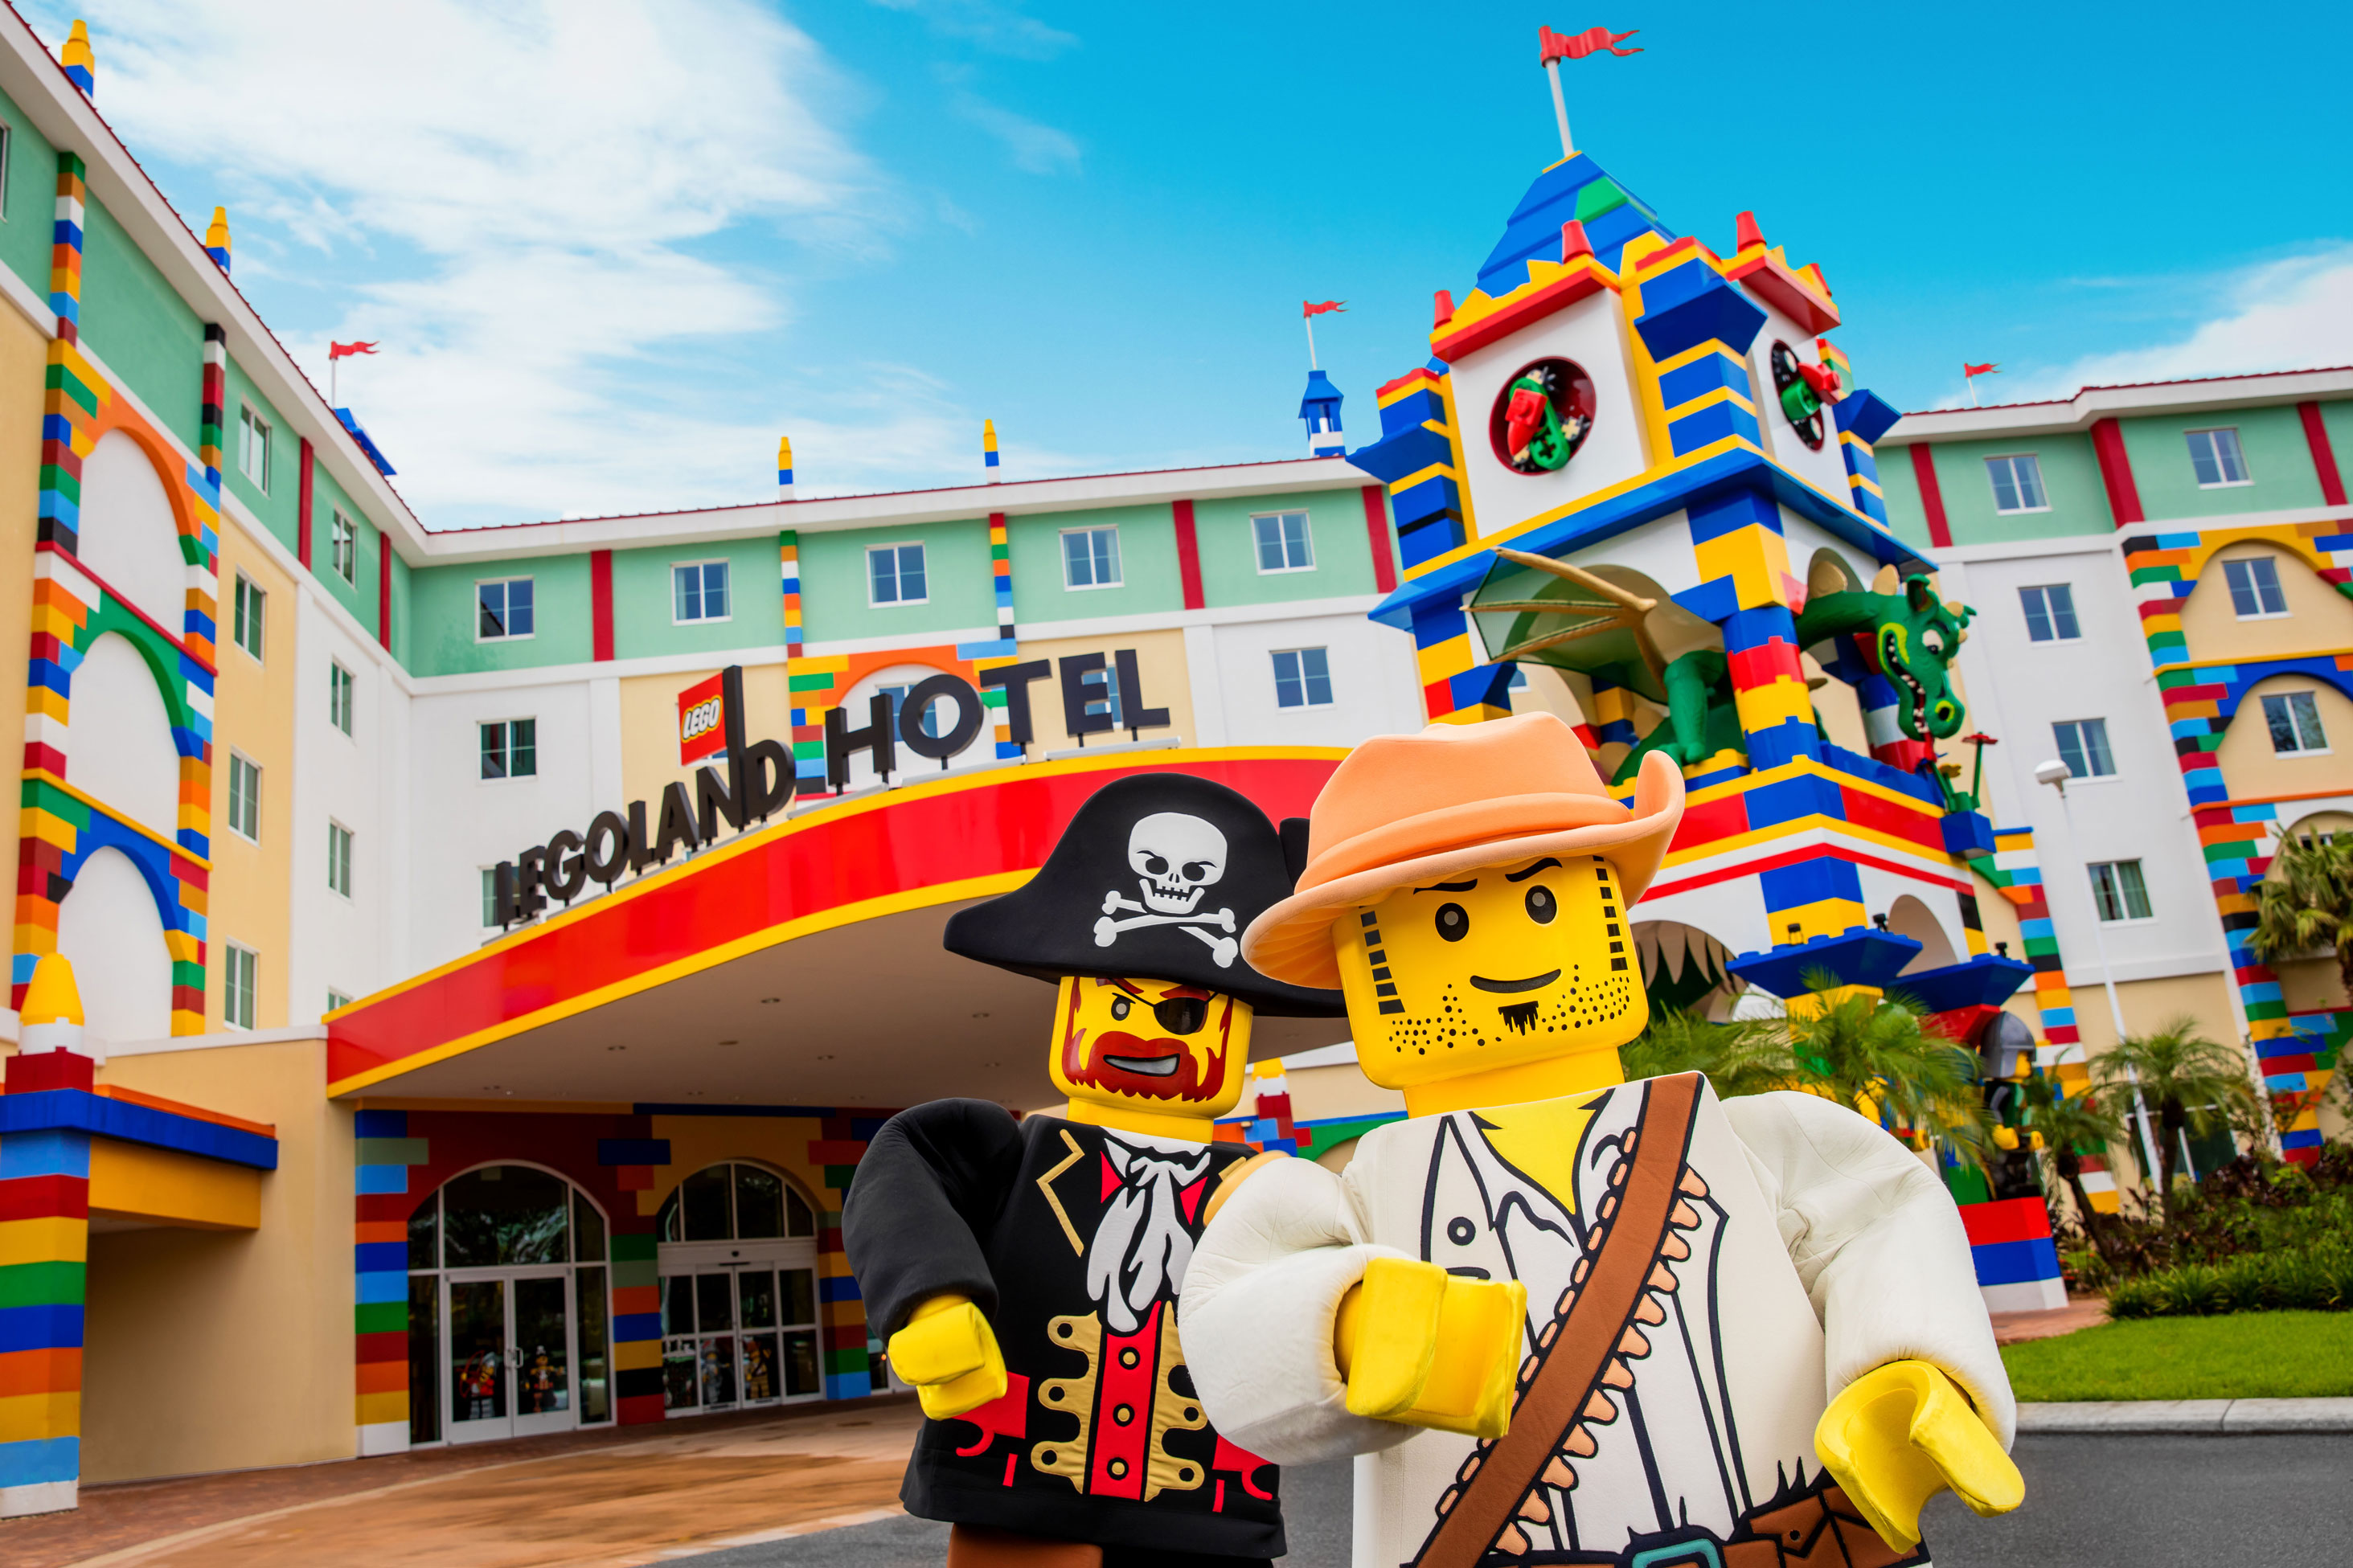 Legoland Hotel Vacation Planning Legoland Florida Resorts